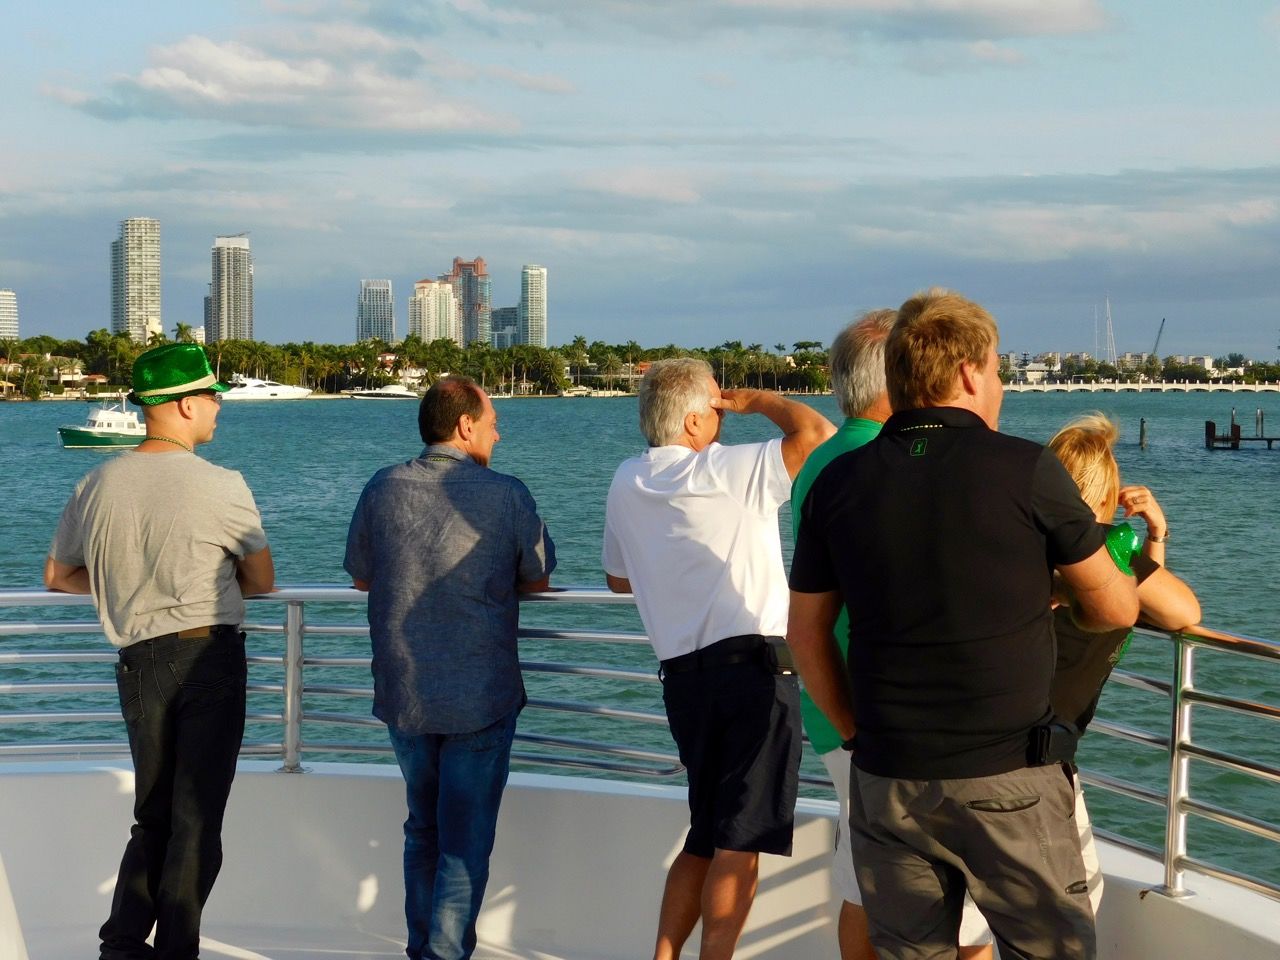 La Croisière s'amuse : soirée croisière québécoise sur les rivières entre Miami et Miami Beach, organisées par Go 2 Vacations et Galaxy Tours.